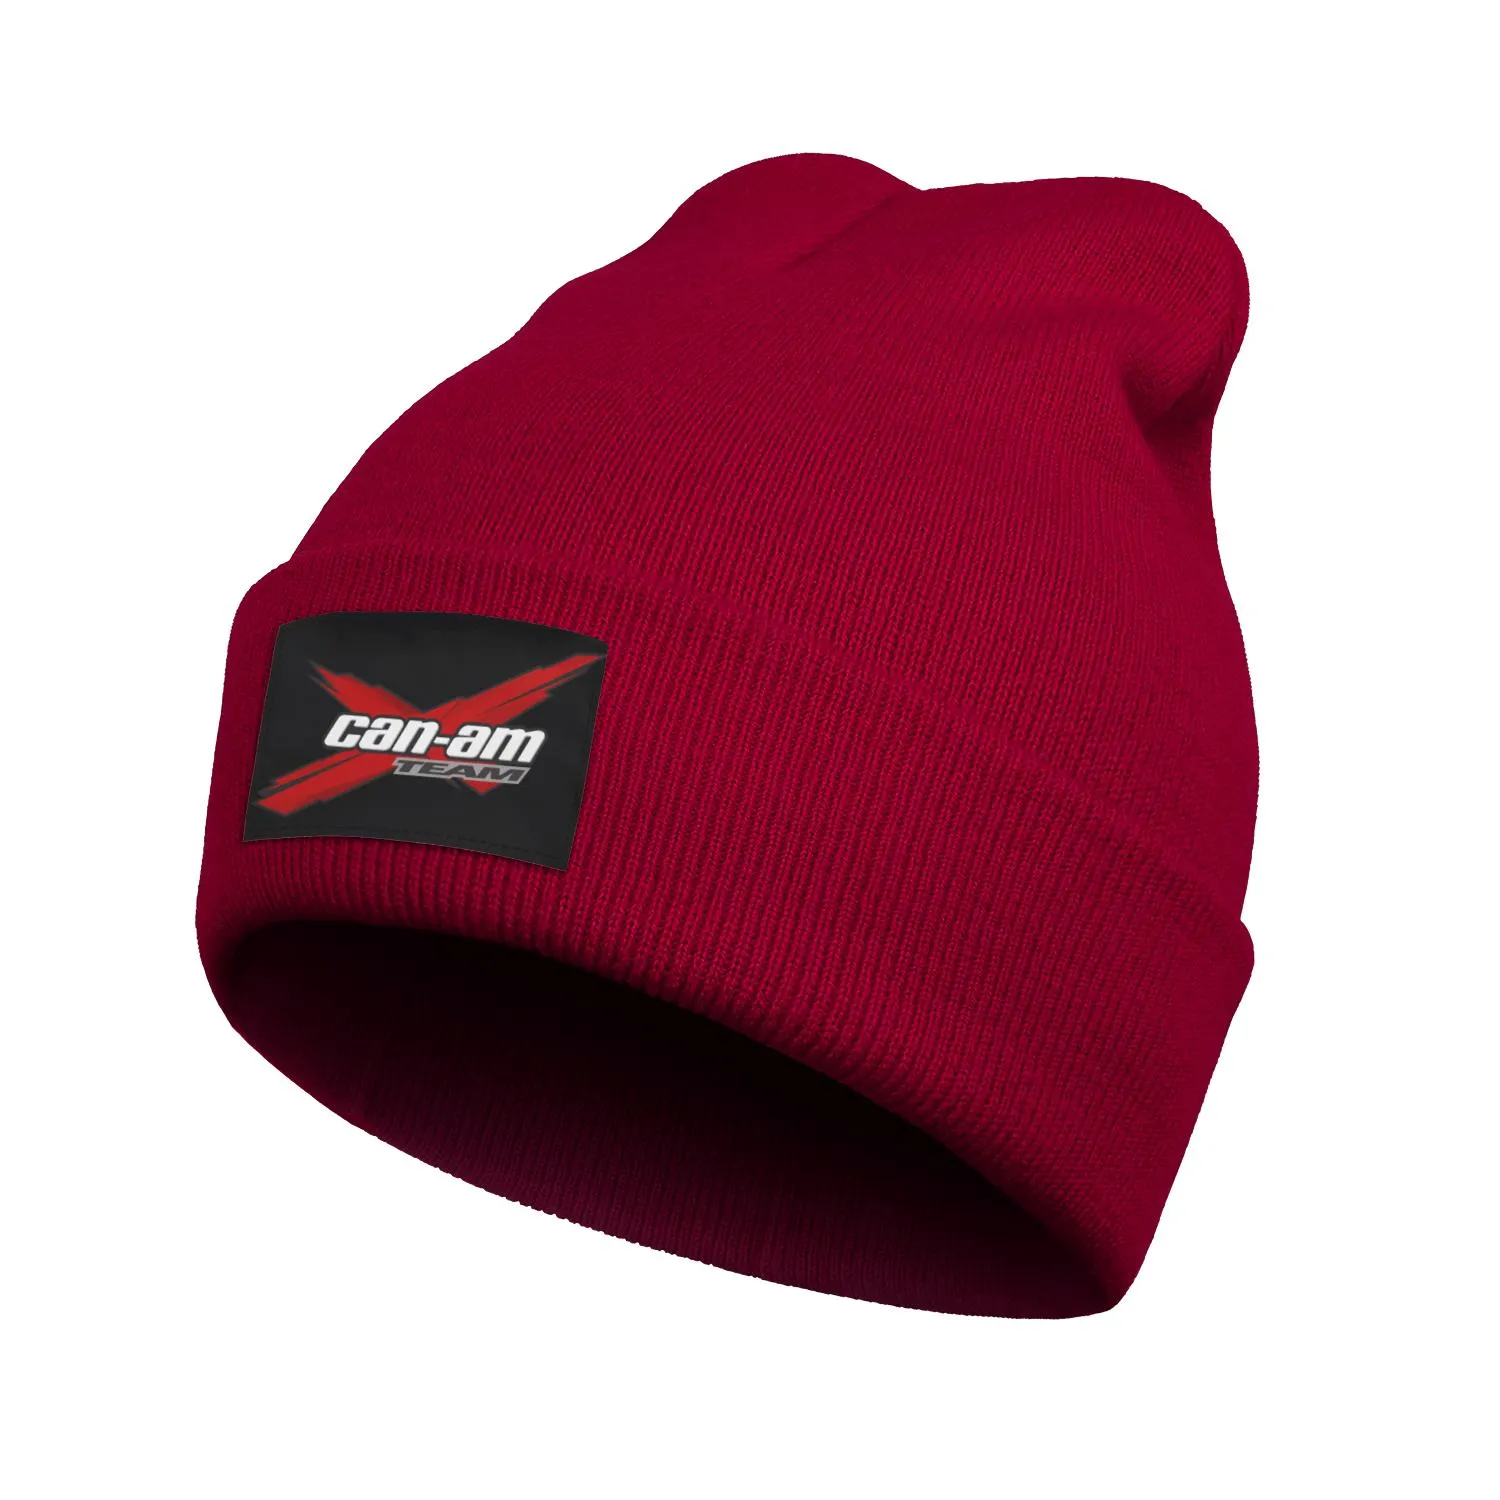 패션 카남 팀 겨울 따뜻한 시계 비니 모자 헬멧 모자 아래에 적합합니다.